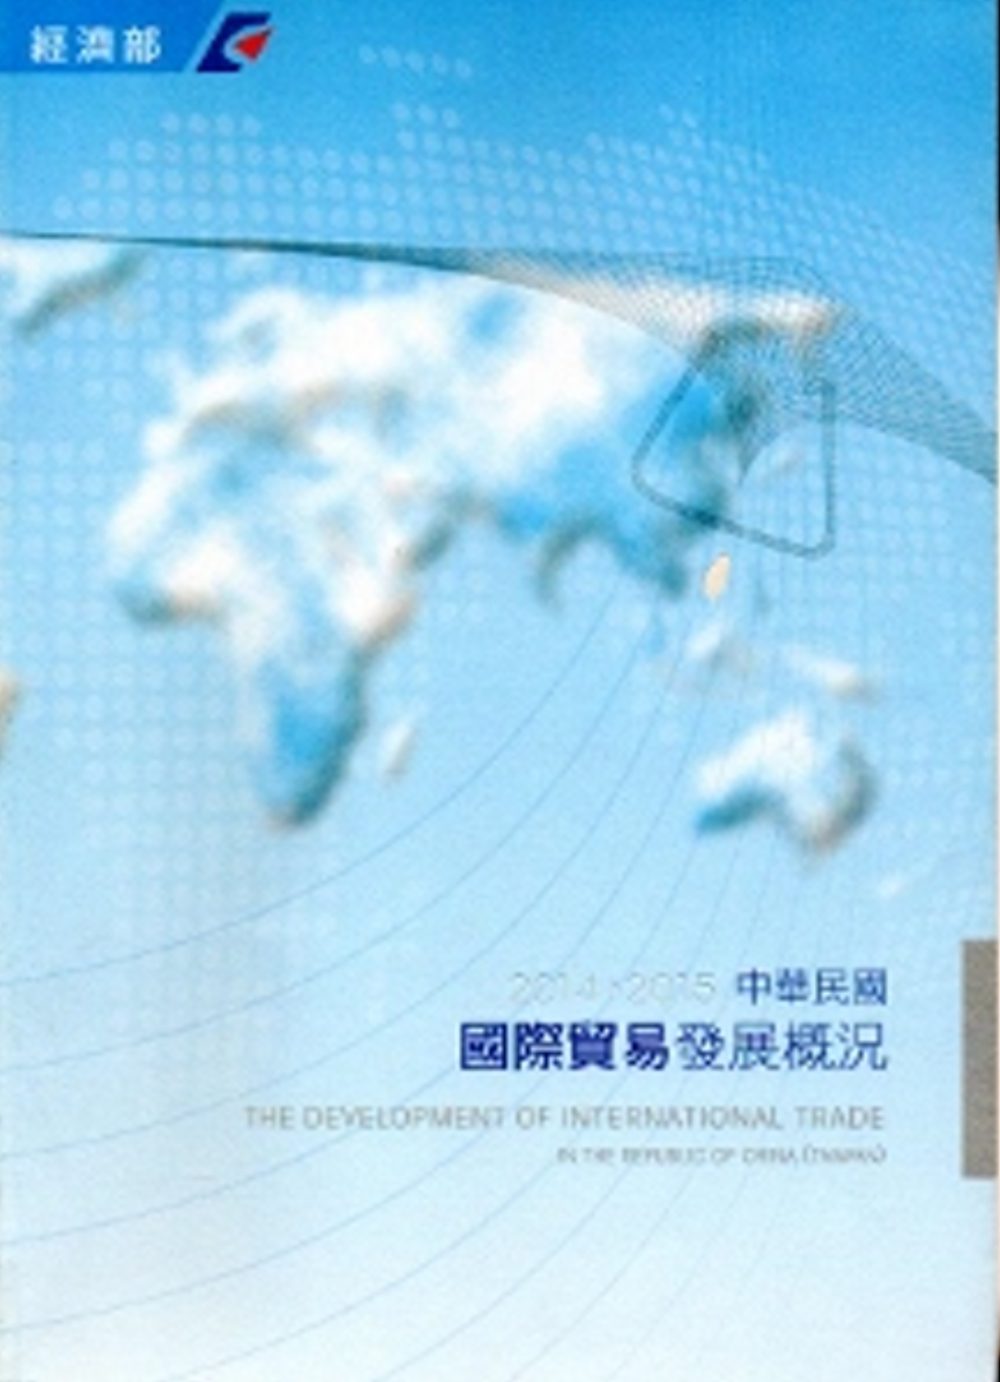 中華民國國際貿易發展概況(2014-2015)[中英對照]